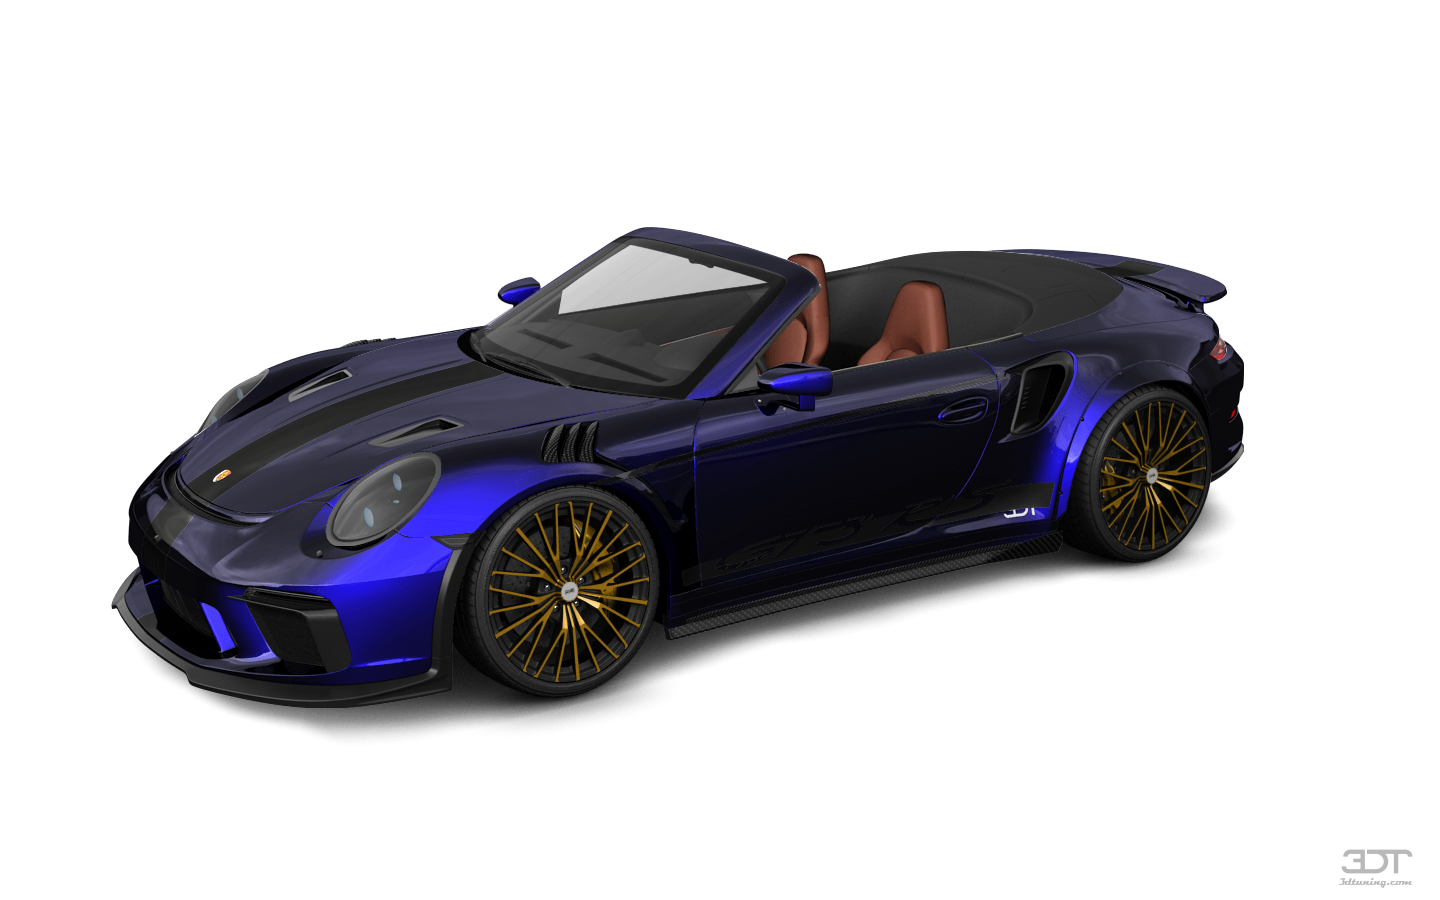 Porsche 911 Turbo S 2 Door Convertible 2014